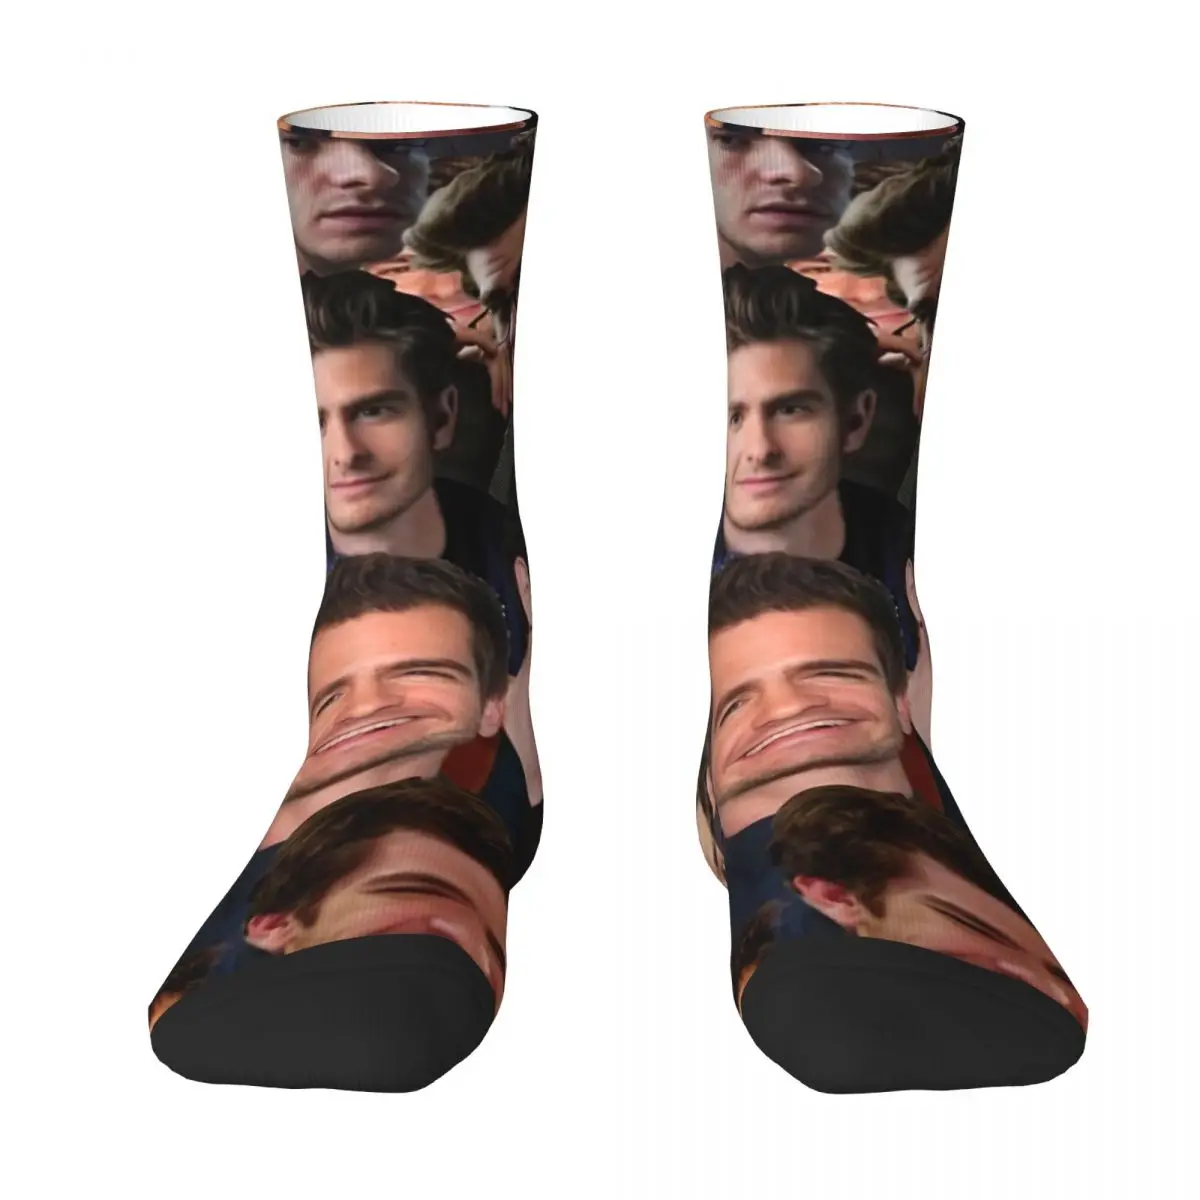 Andrew Garfield Collage Adult Socks Unisex socks,men Socks women Socks